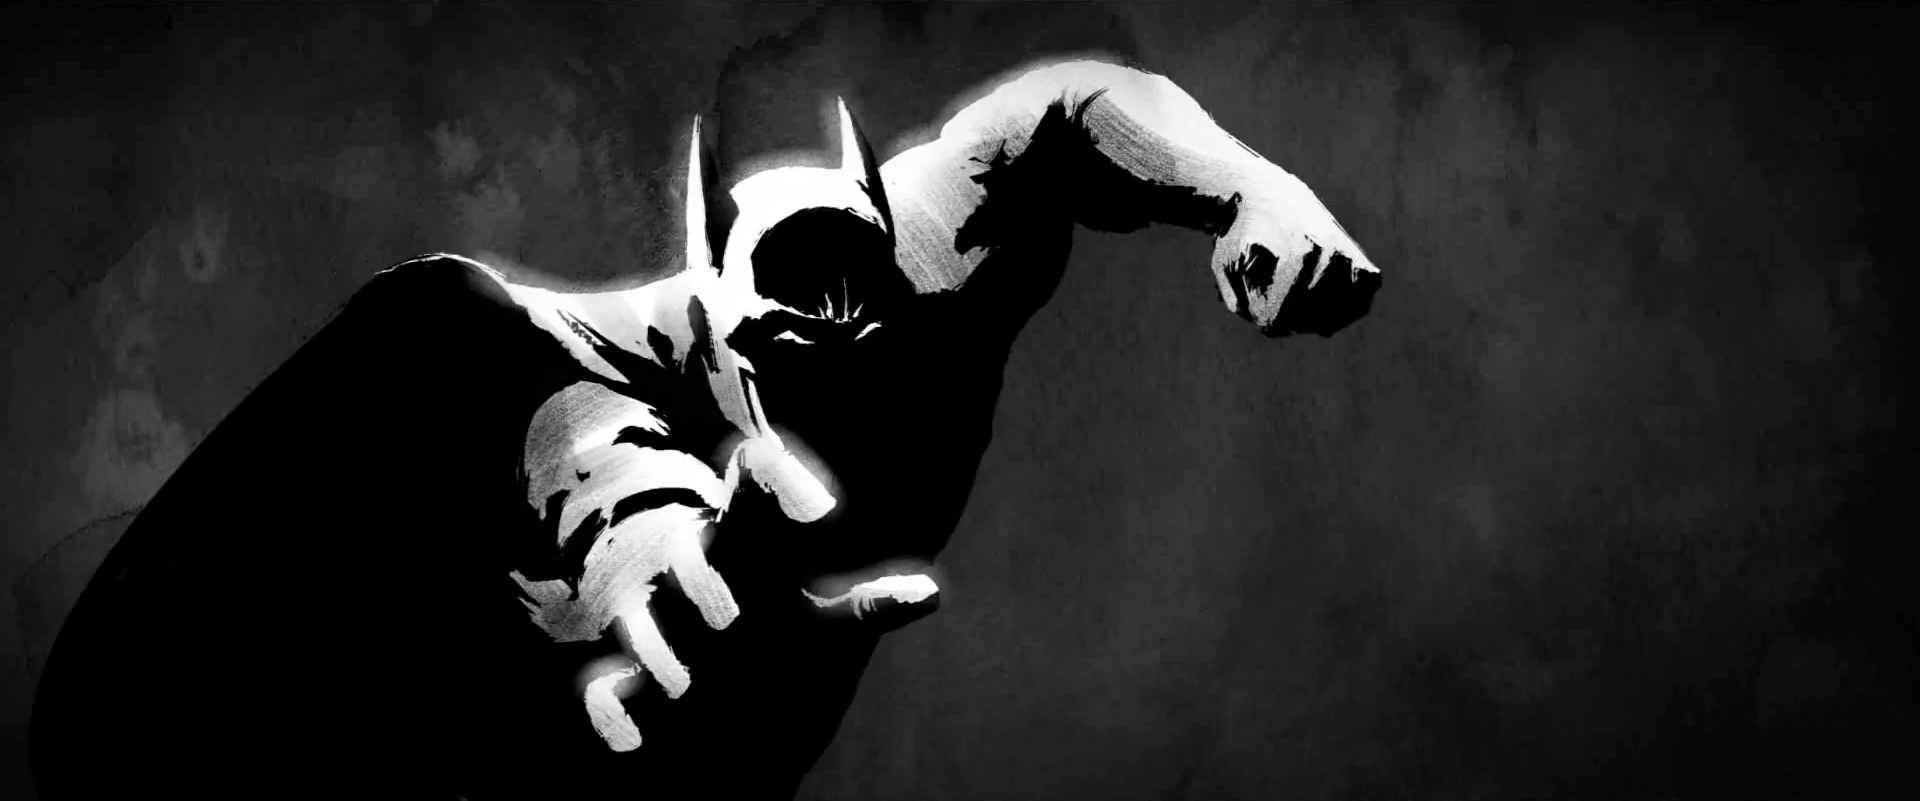 stunning-batman-animatic-short-a-gotham-fairytale-33.jpg